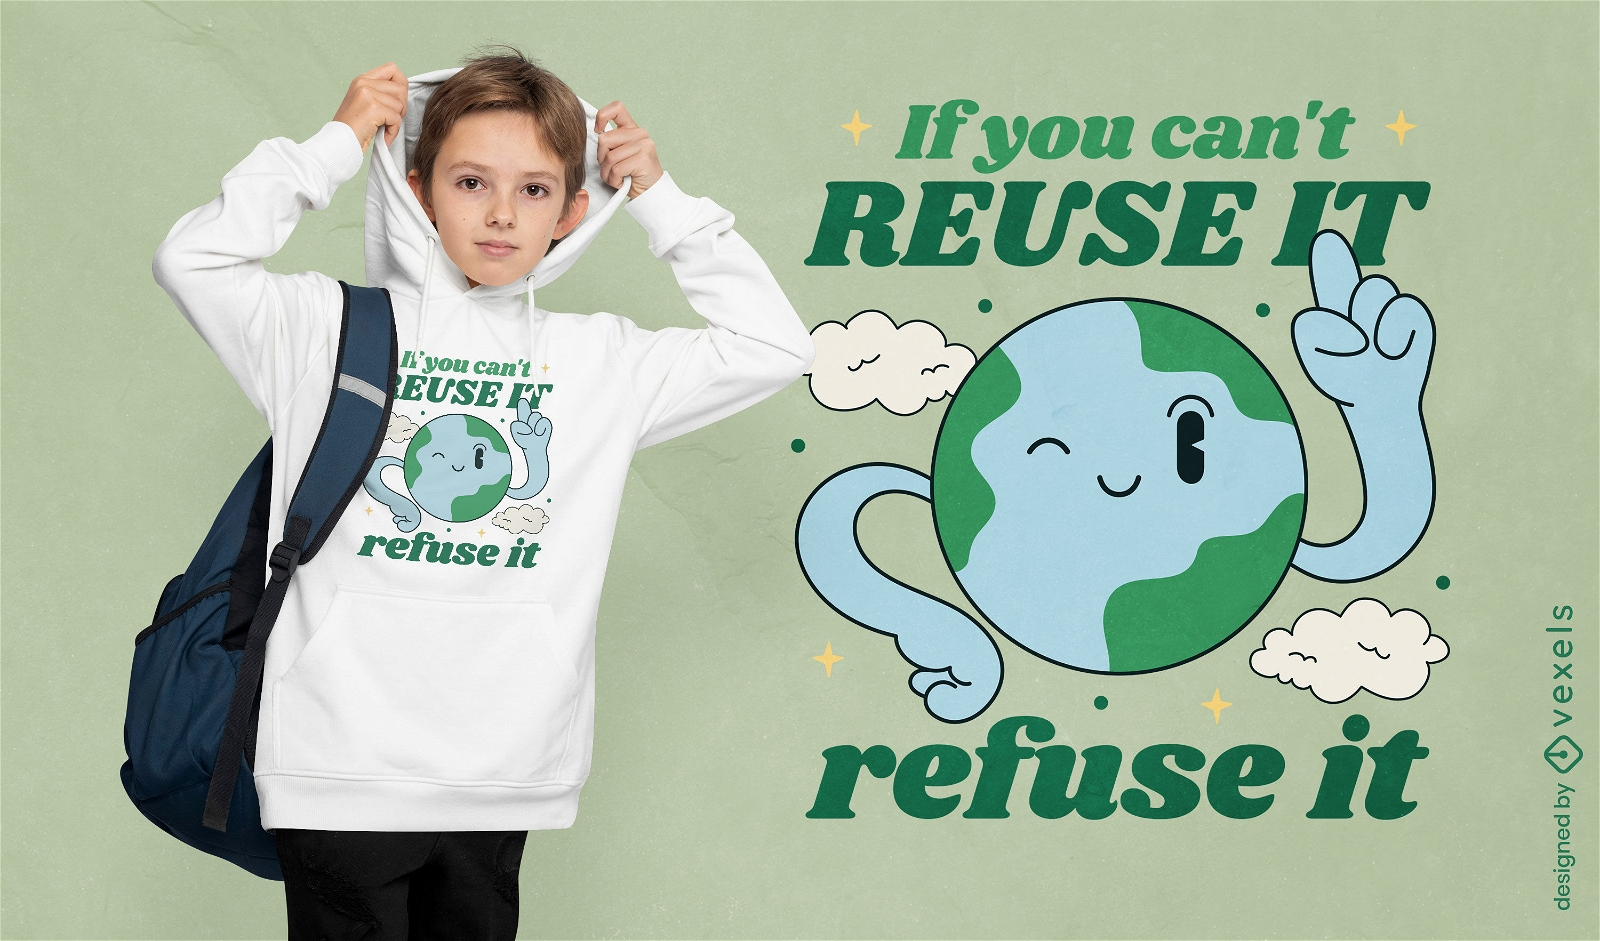 Reutilize ou recuse design de camiseta